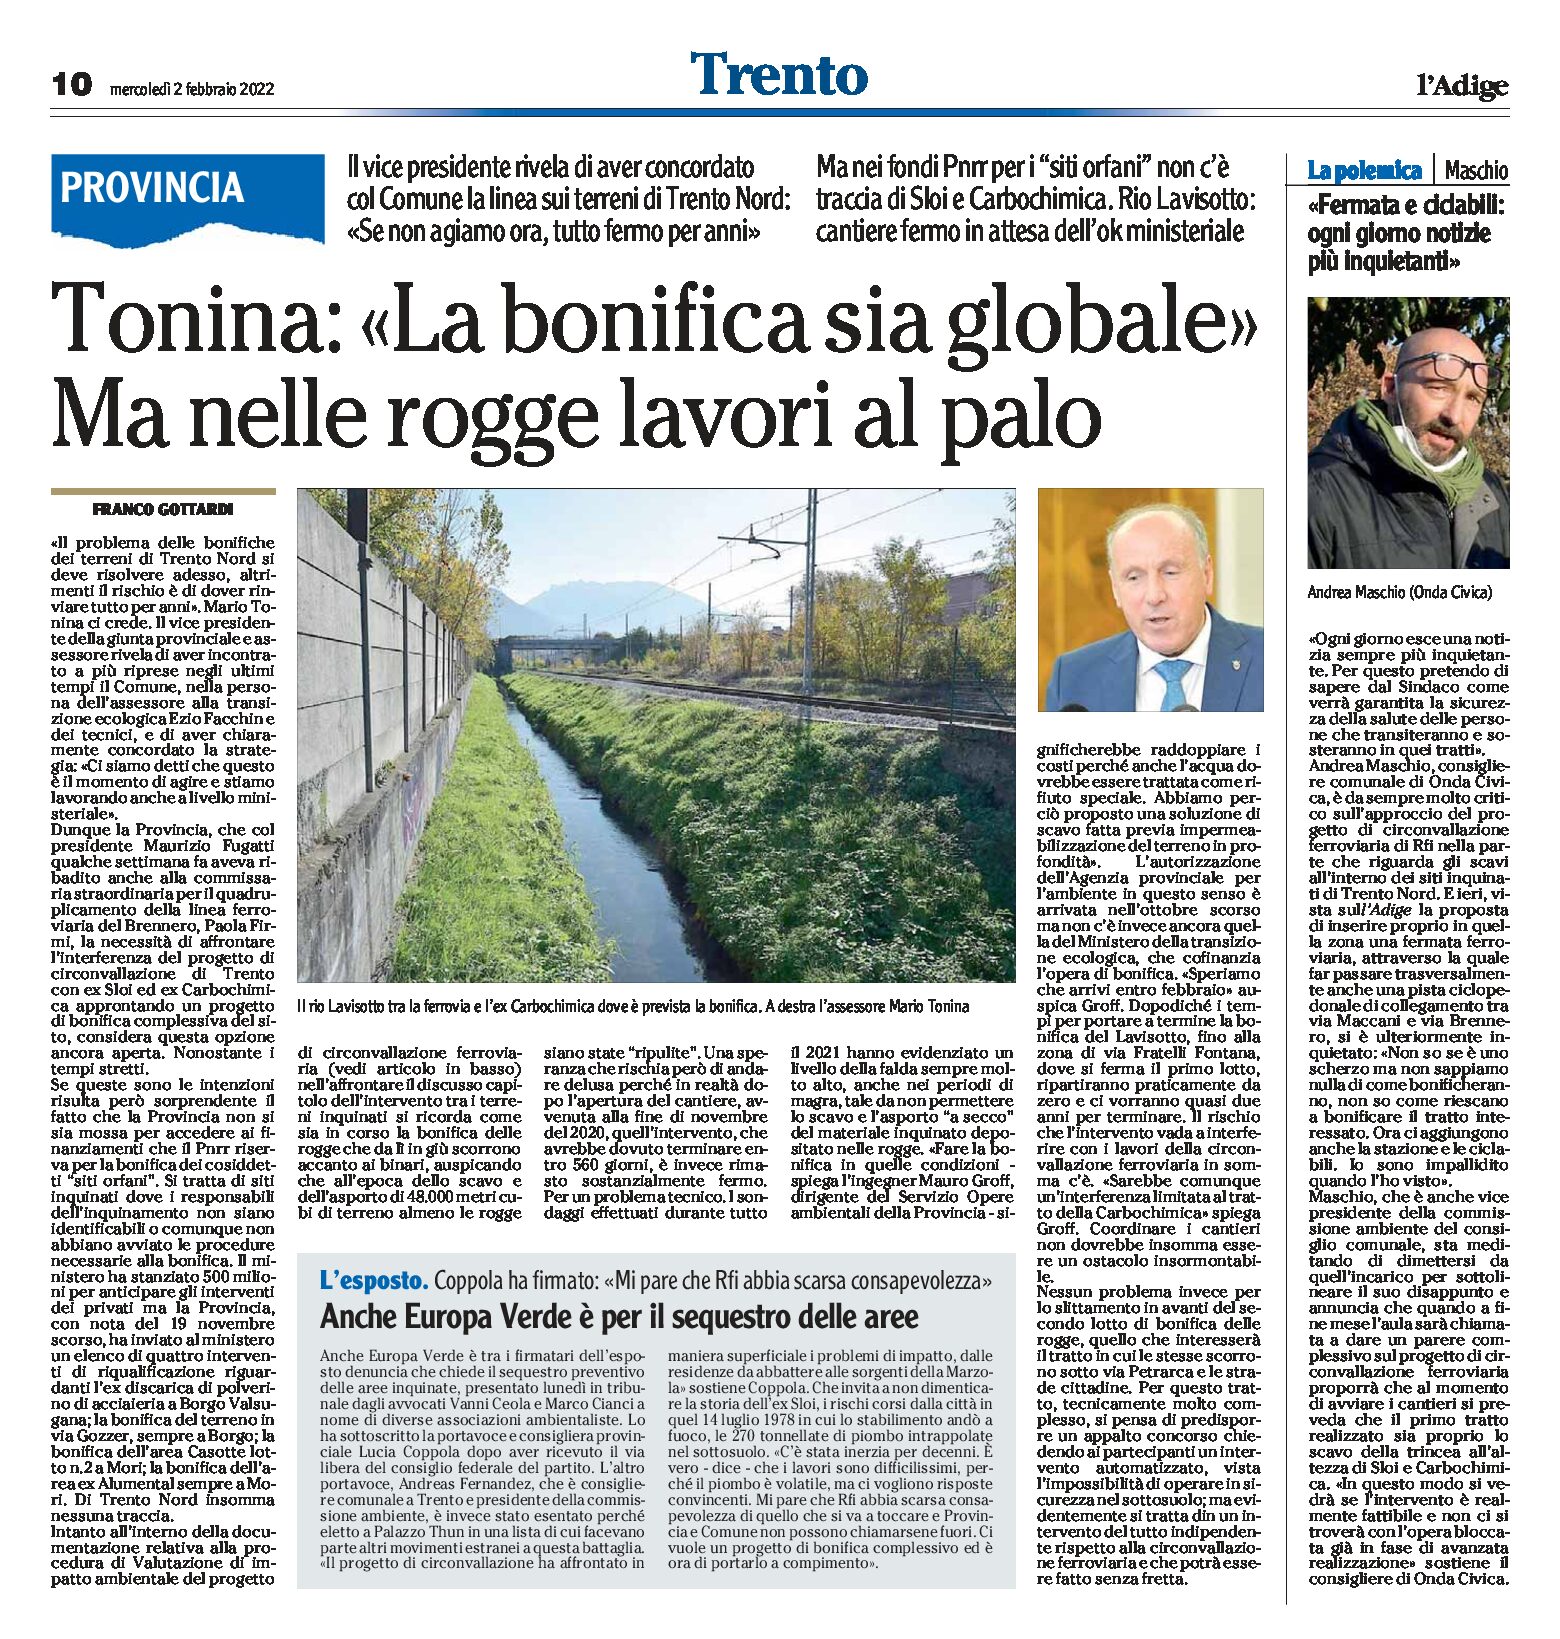 Trento Nord: Tonina “la bonifica sia globale”